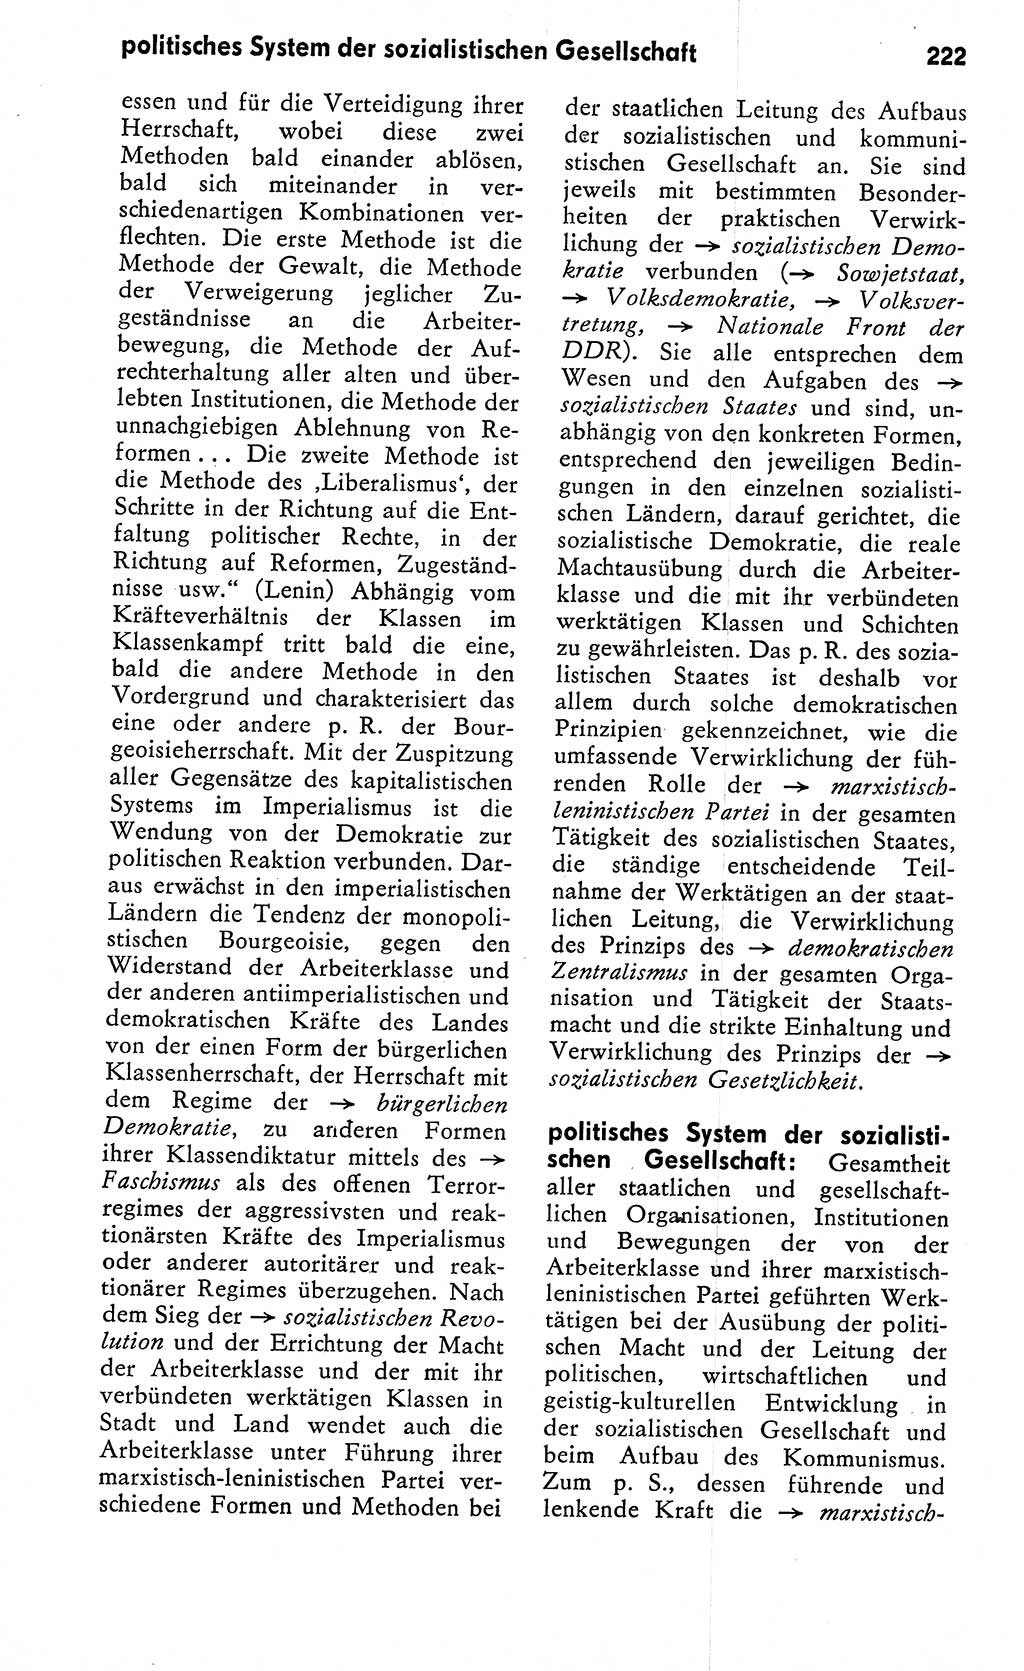 Wörterbuch zum sozialistischen Staat [Deutsche Demokratische Republik (DDR)] 1974, Seite 222 (Wb. soz. St. DDR 1974, S. 222)